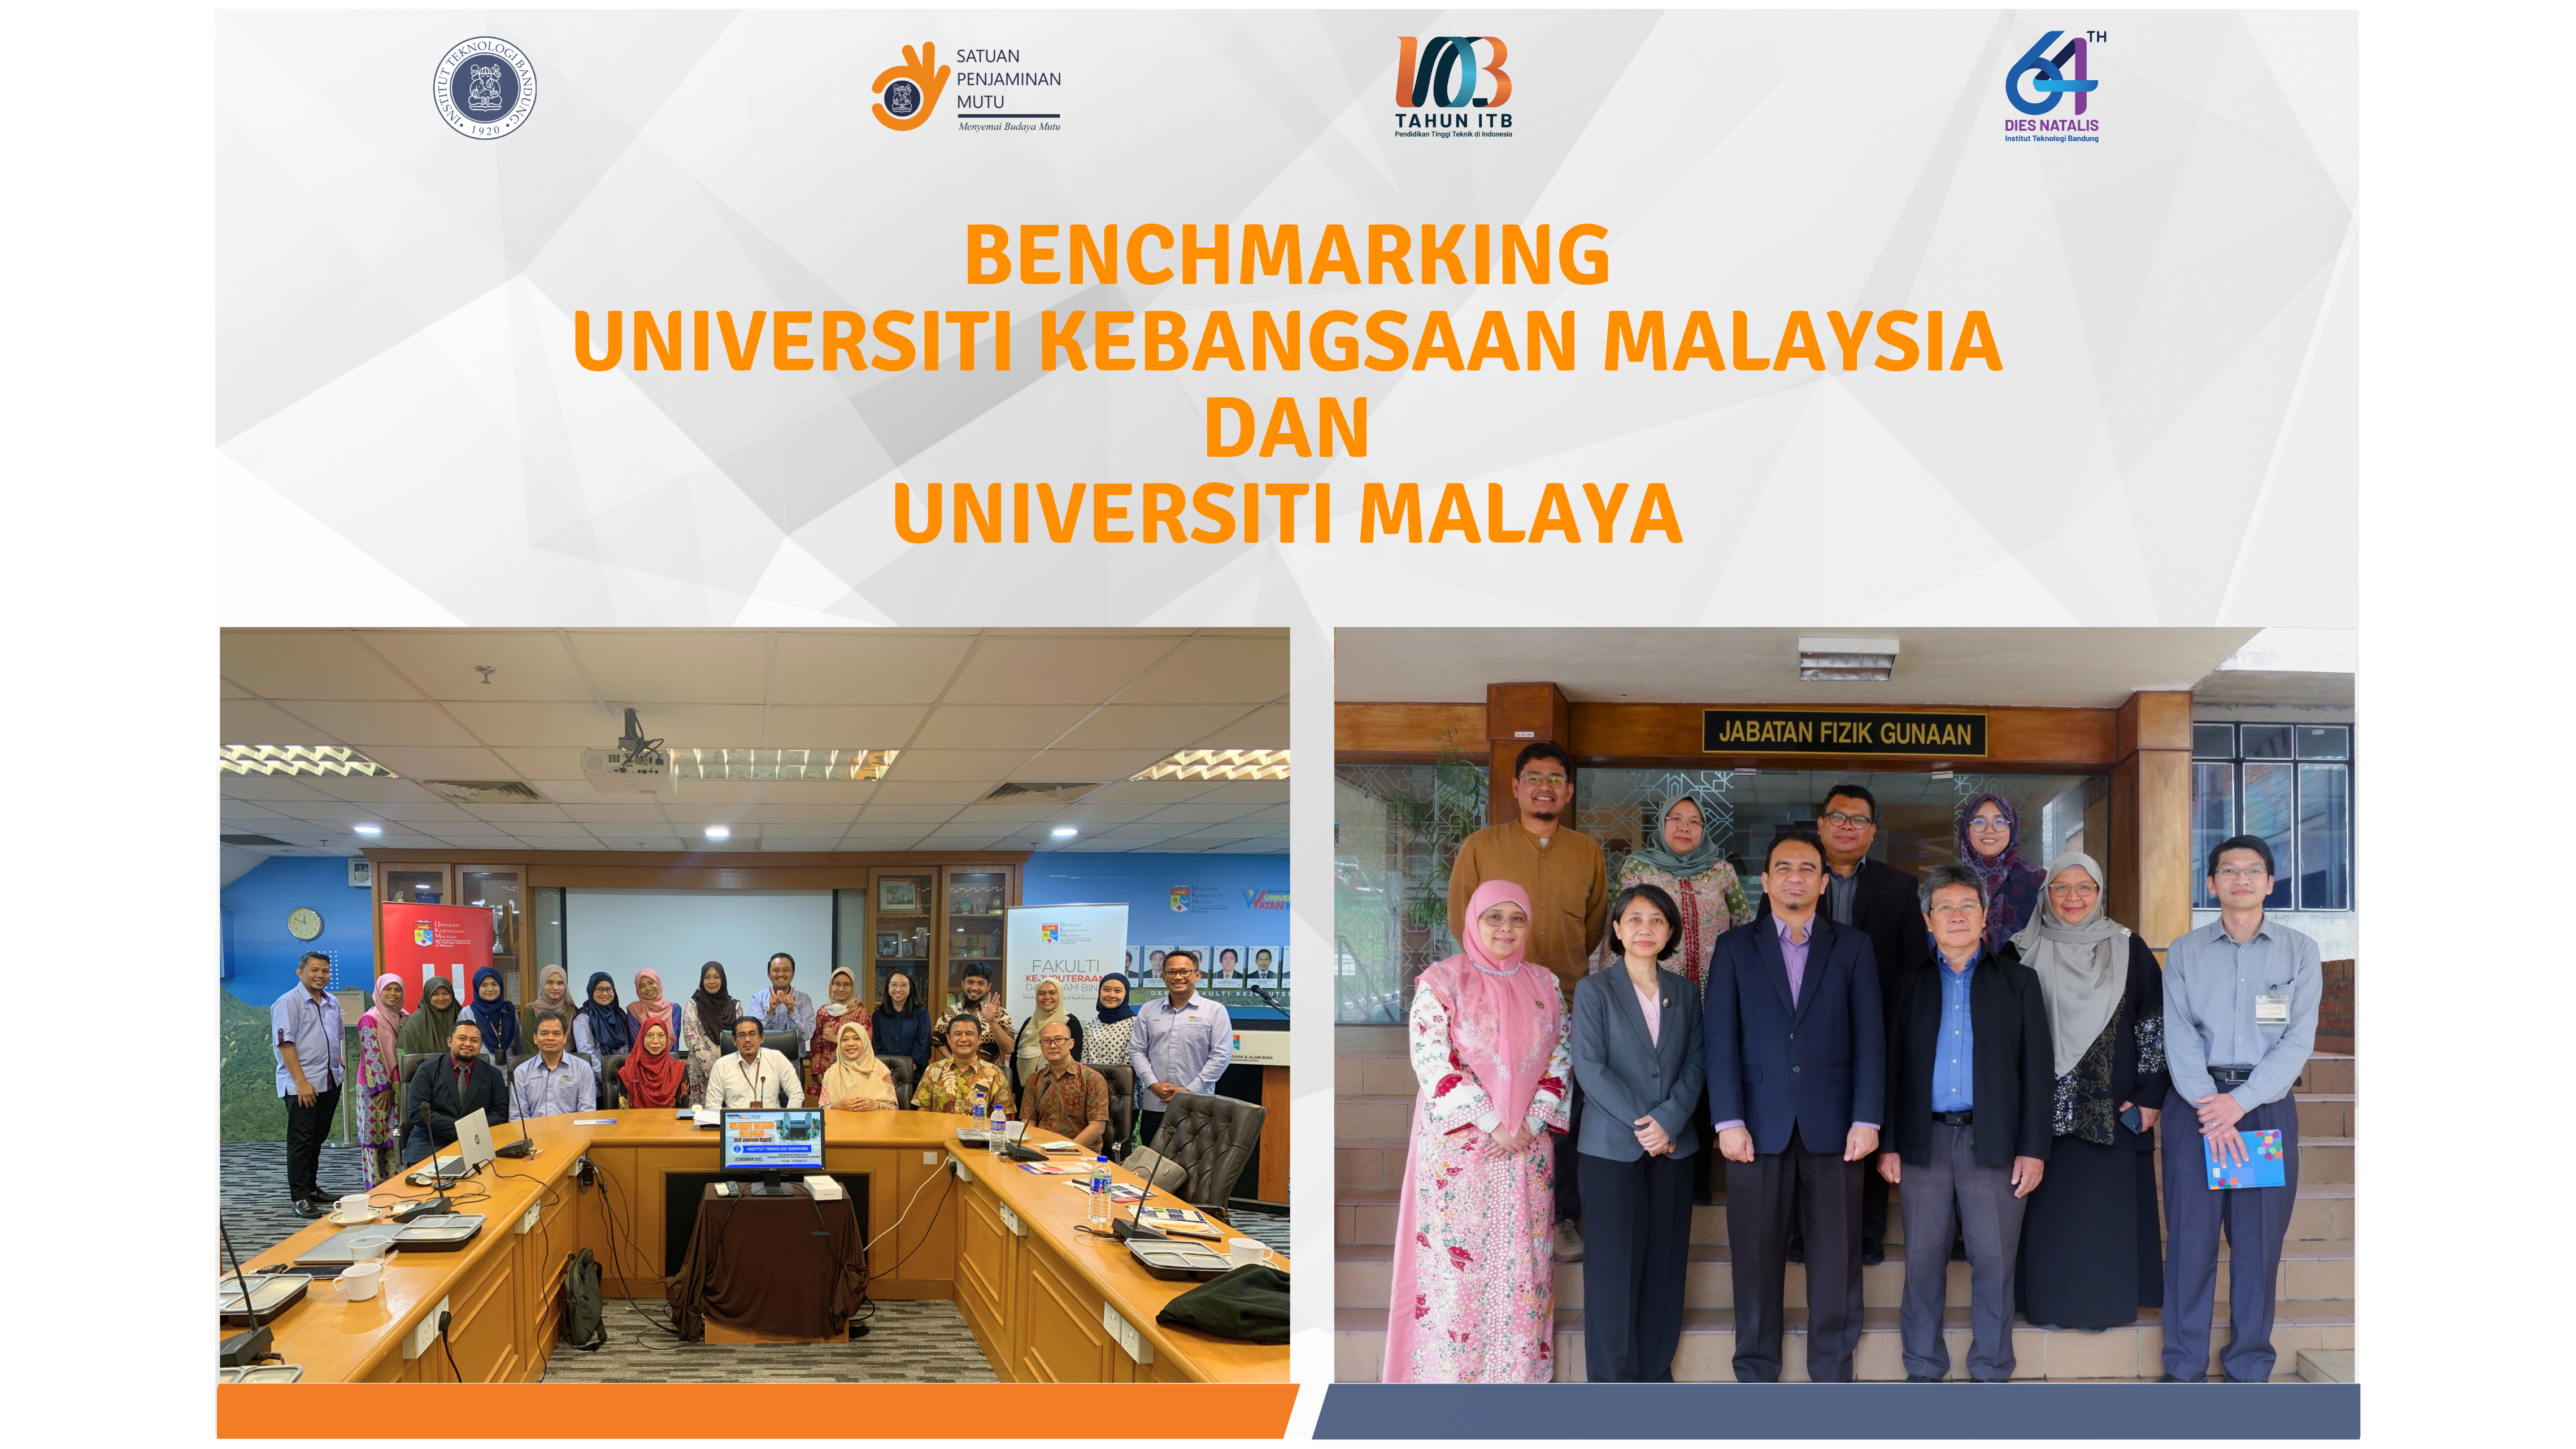 Benchmarking Universiti Kebangsaan Malaysia dan Universiti Malaya